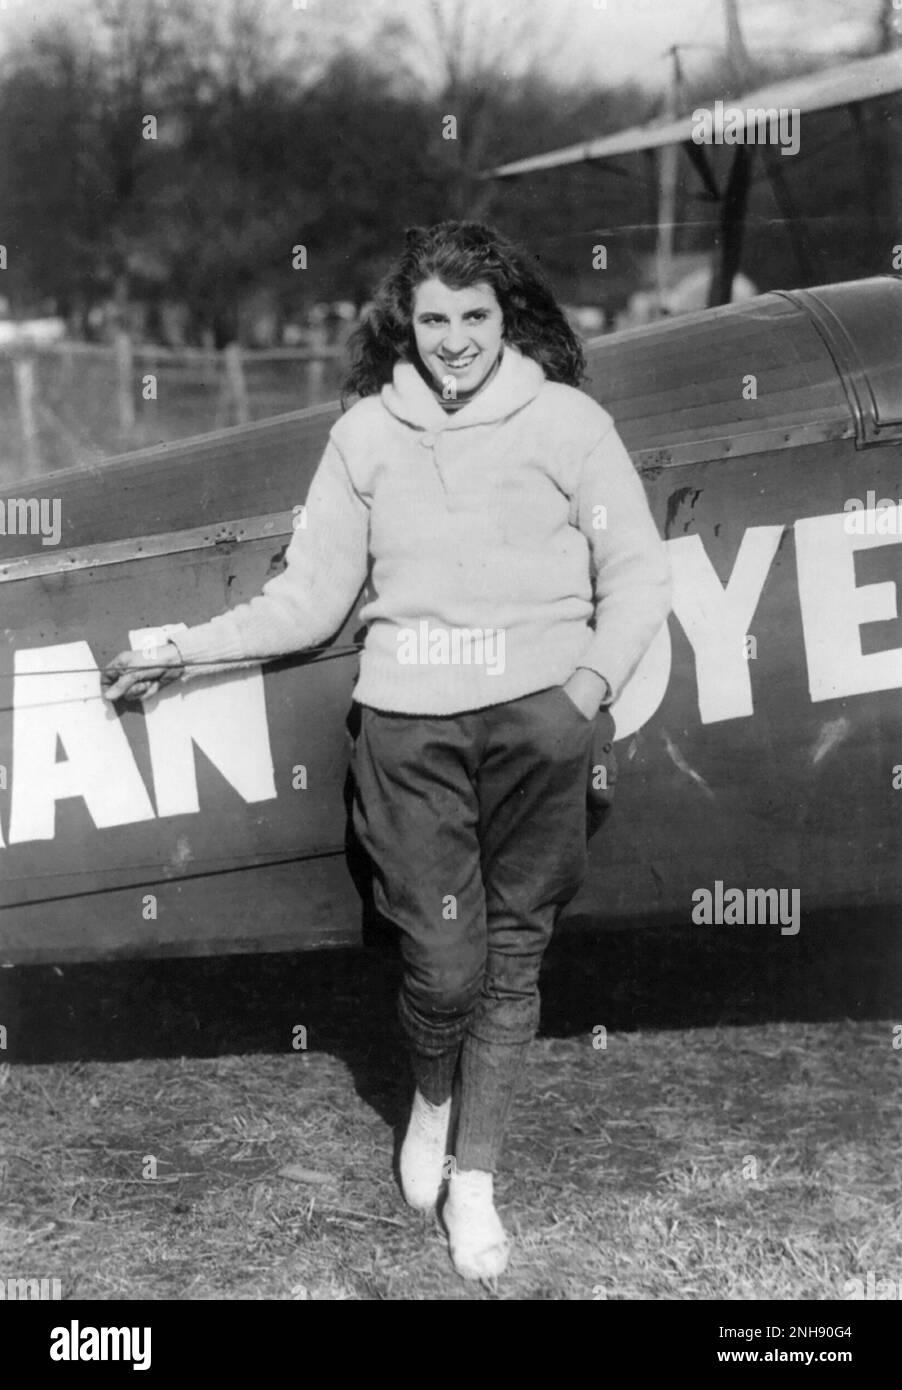 Lillian Boyer steht auf dem Flügel eines fliegenden Doppeldeckers, 21. Januar 1922. Lillian Boyer (1901-1989) war ein amerikanischer Wanderer, der zwischen 1921 und 1929 zahlreiche Stunts aus der Luft vorführte, darunter Flügelwandern, Transfers vom Auto zum Flugzeug und Fallschirmspringen. Stockfoto